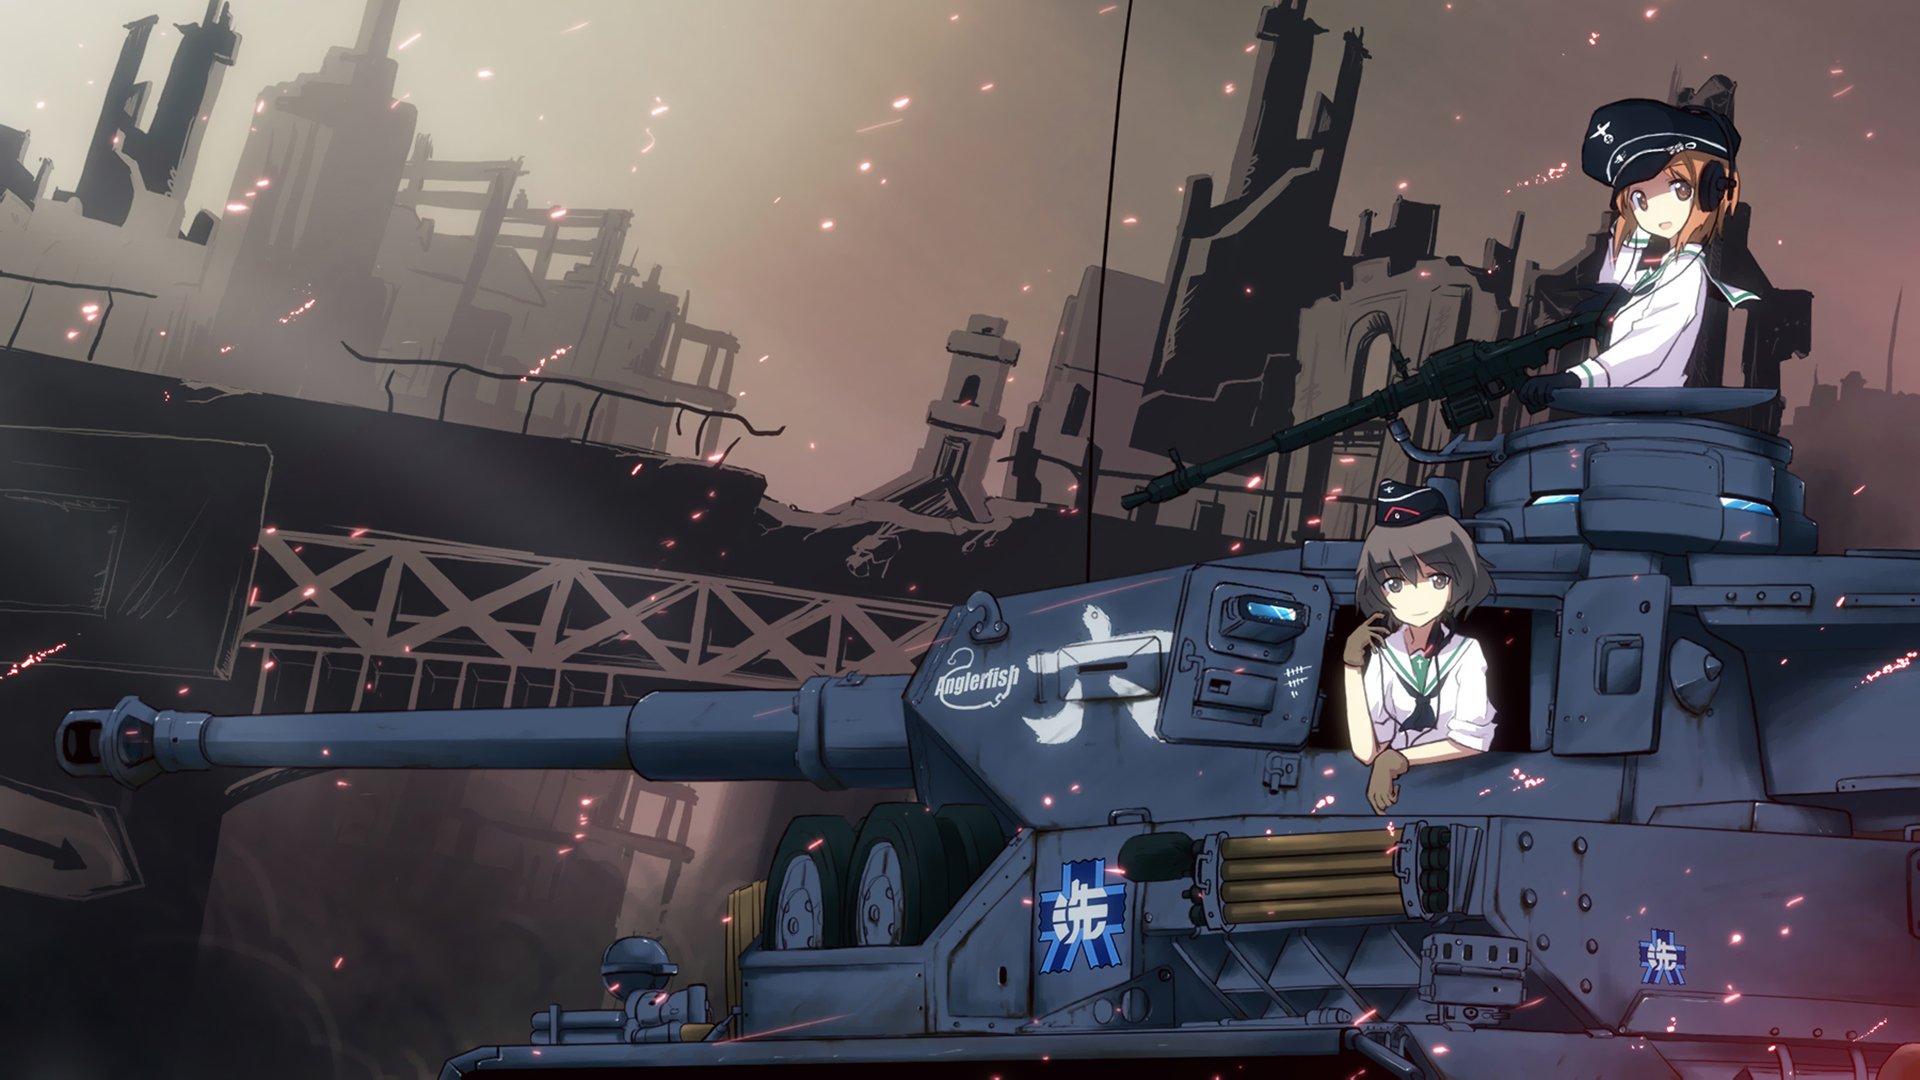 4. Girls und Panzer - wide 4